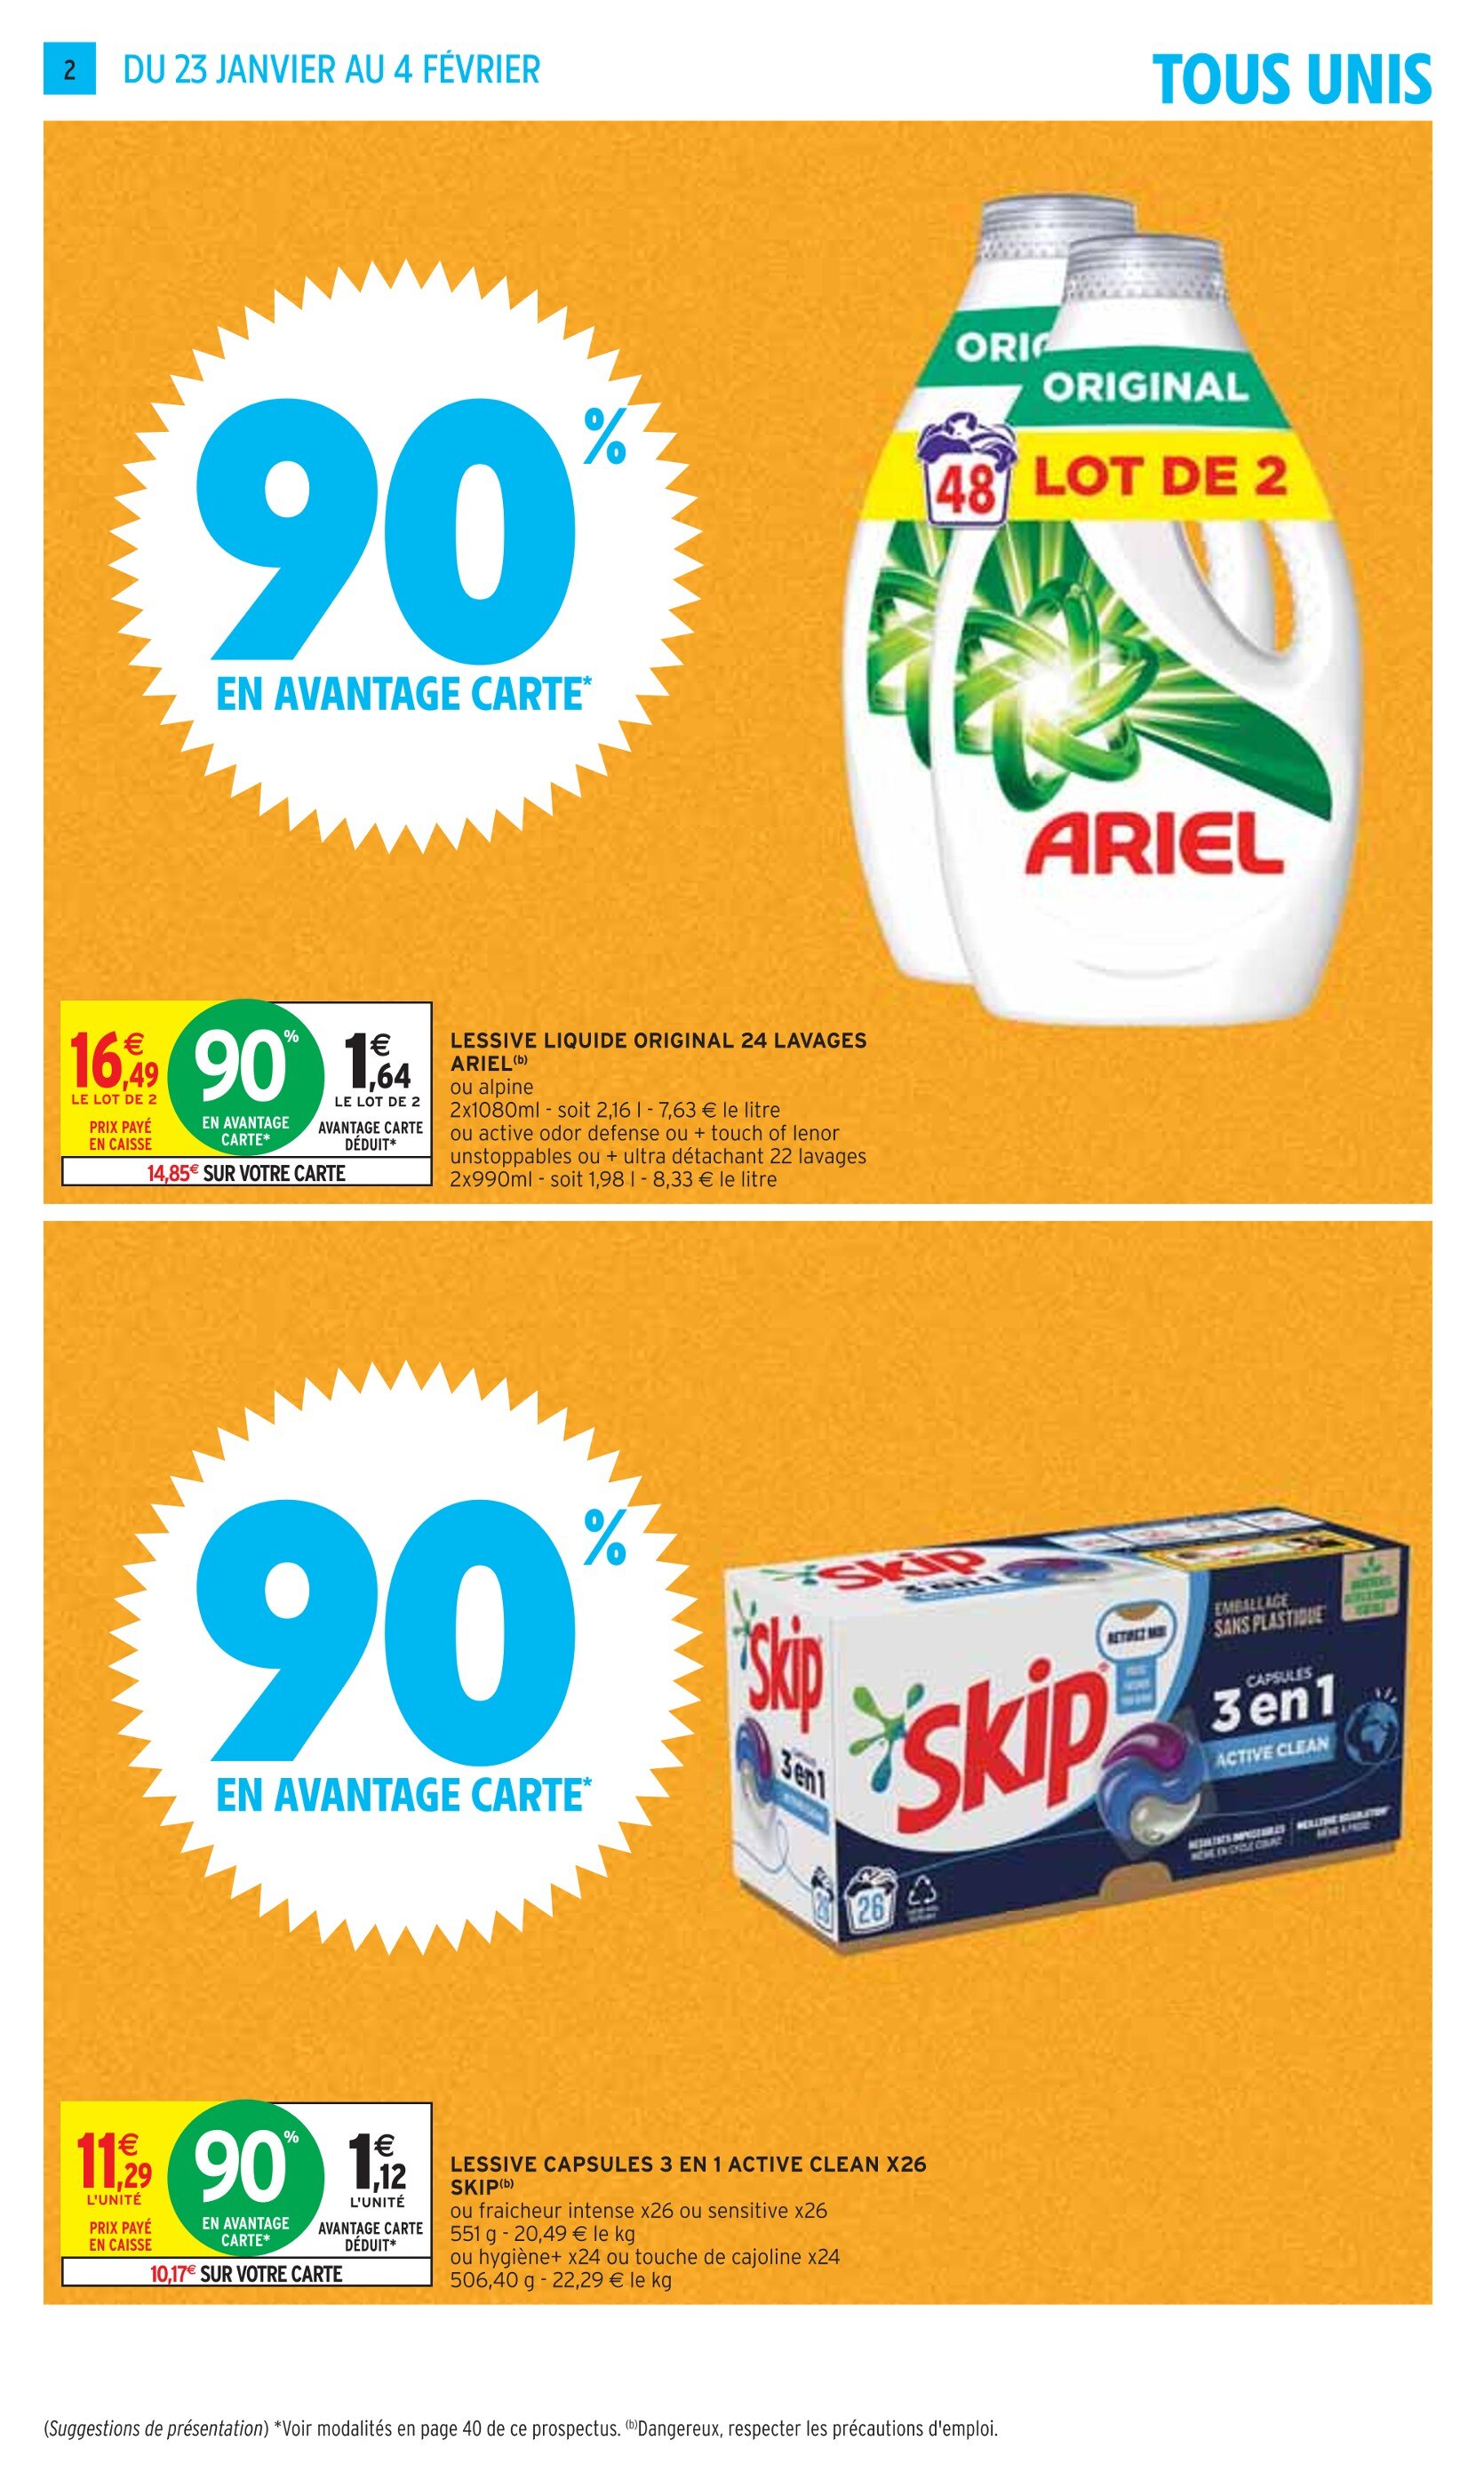 Lessive Liquide Auchan ᐅ Promos et prix dans le catalogue de la semaine